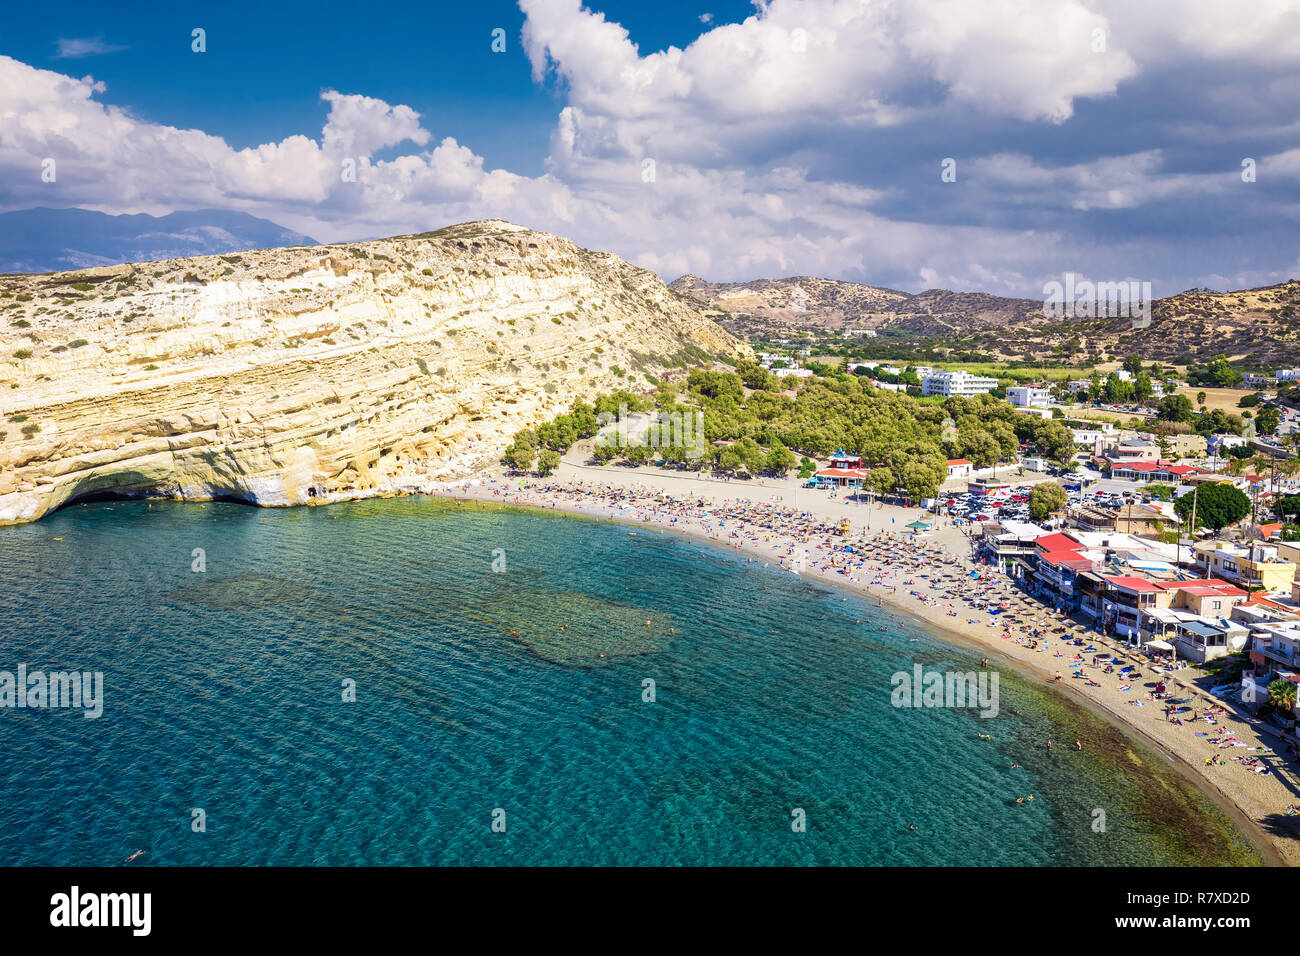 Vista aérea de la playa de Matala en la isla de Creta con claras aguas azules, Grecia, Europa. Creta es la mayor y más poblada de las islas griegas. Foto de stock